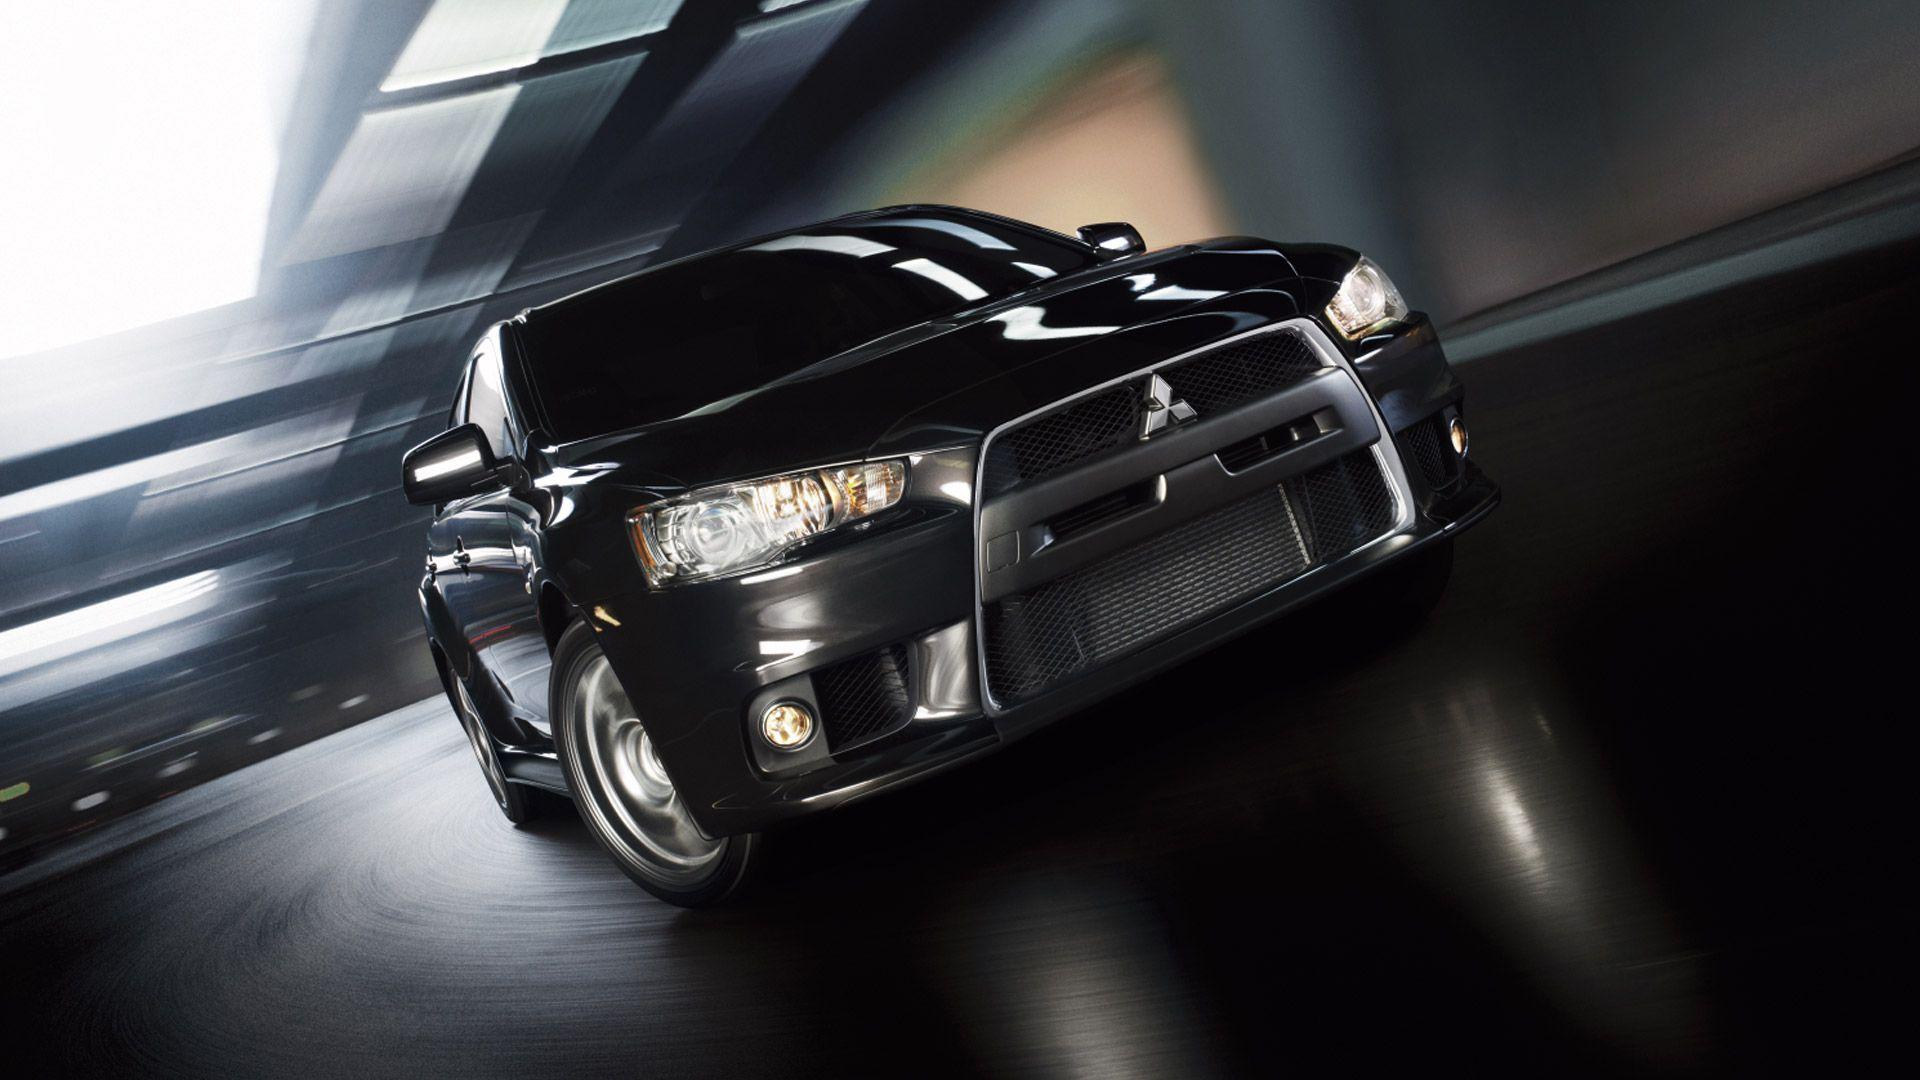 Mitsubishi Lancer 2014 Black HD Wallpaper, Background Image